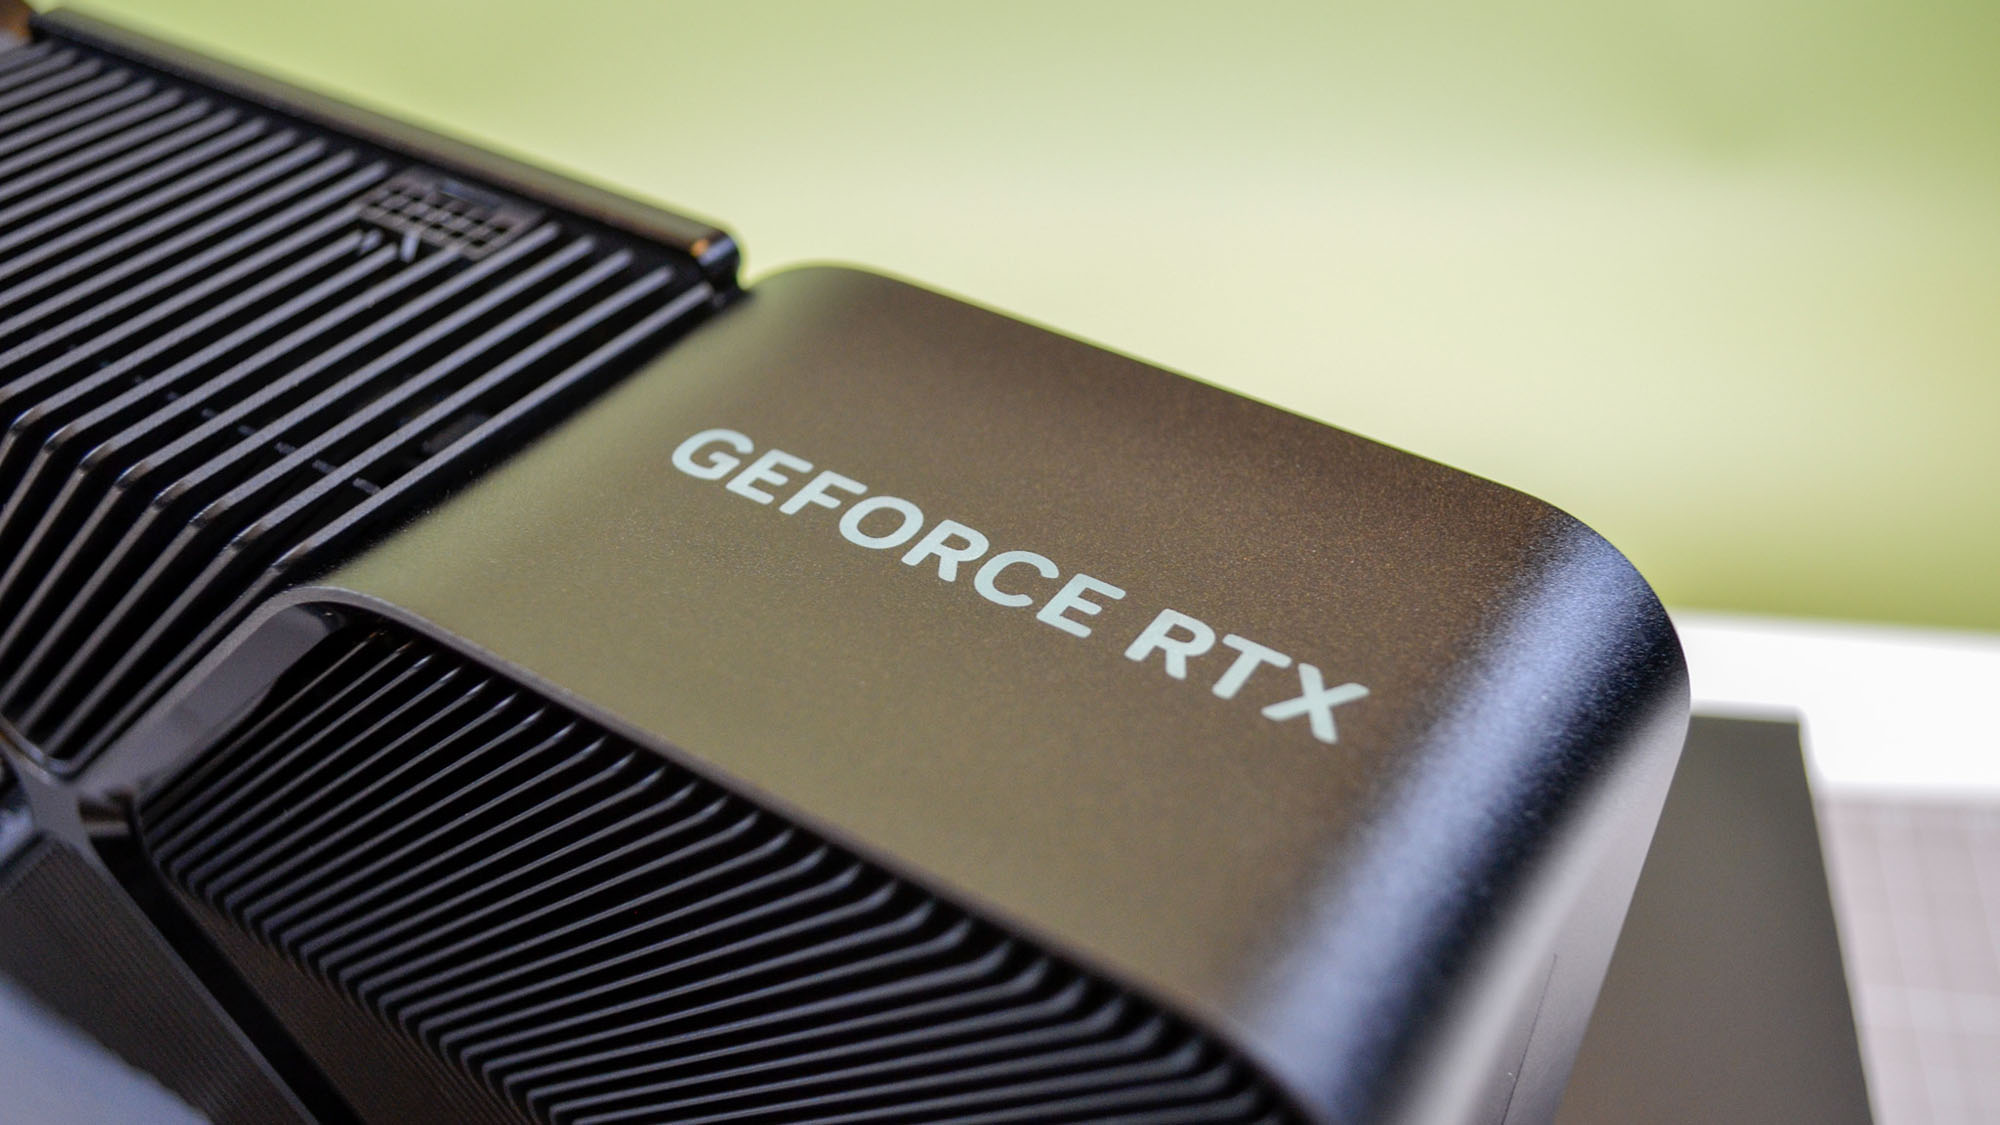 Графические процессоры Nvidia RTX 5090 и 5080 могут появиться менее чем через полгода, но скальперы могут испортить этот ранний запуск